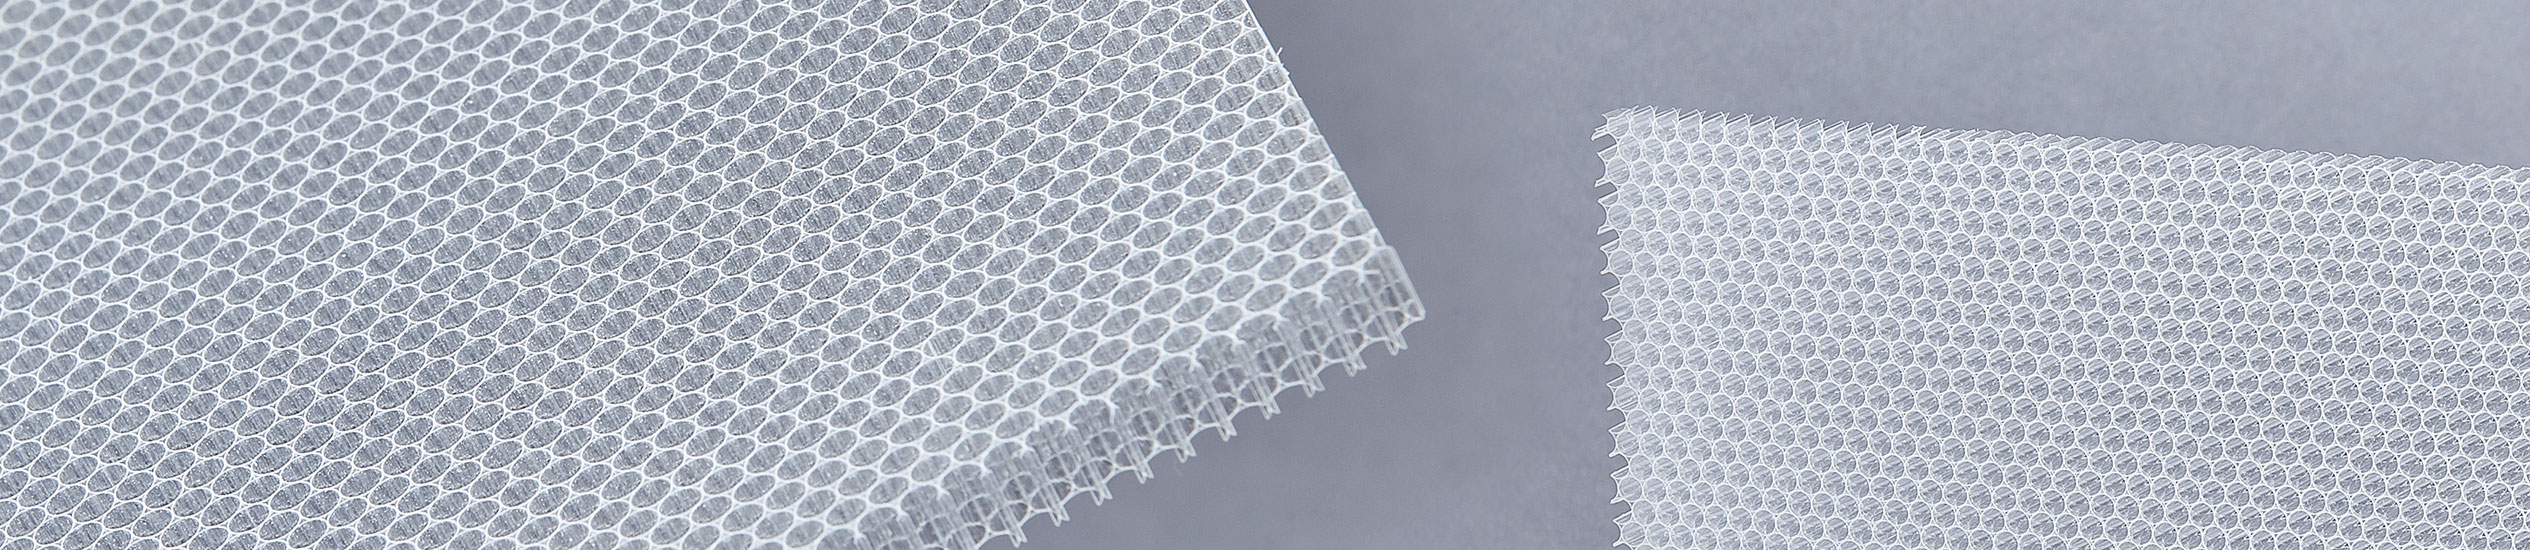 Cel components offre lastre in nido d'ape di policarbonato di diversi spessori, diametro della cella e dimensione.